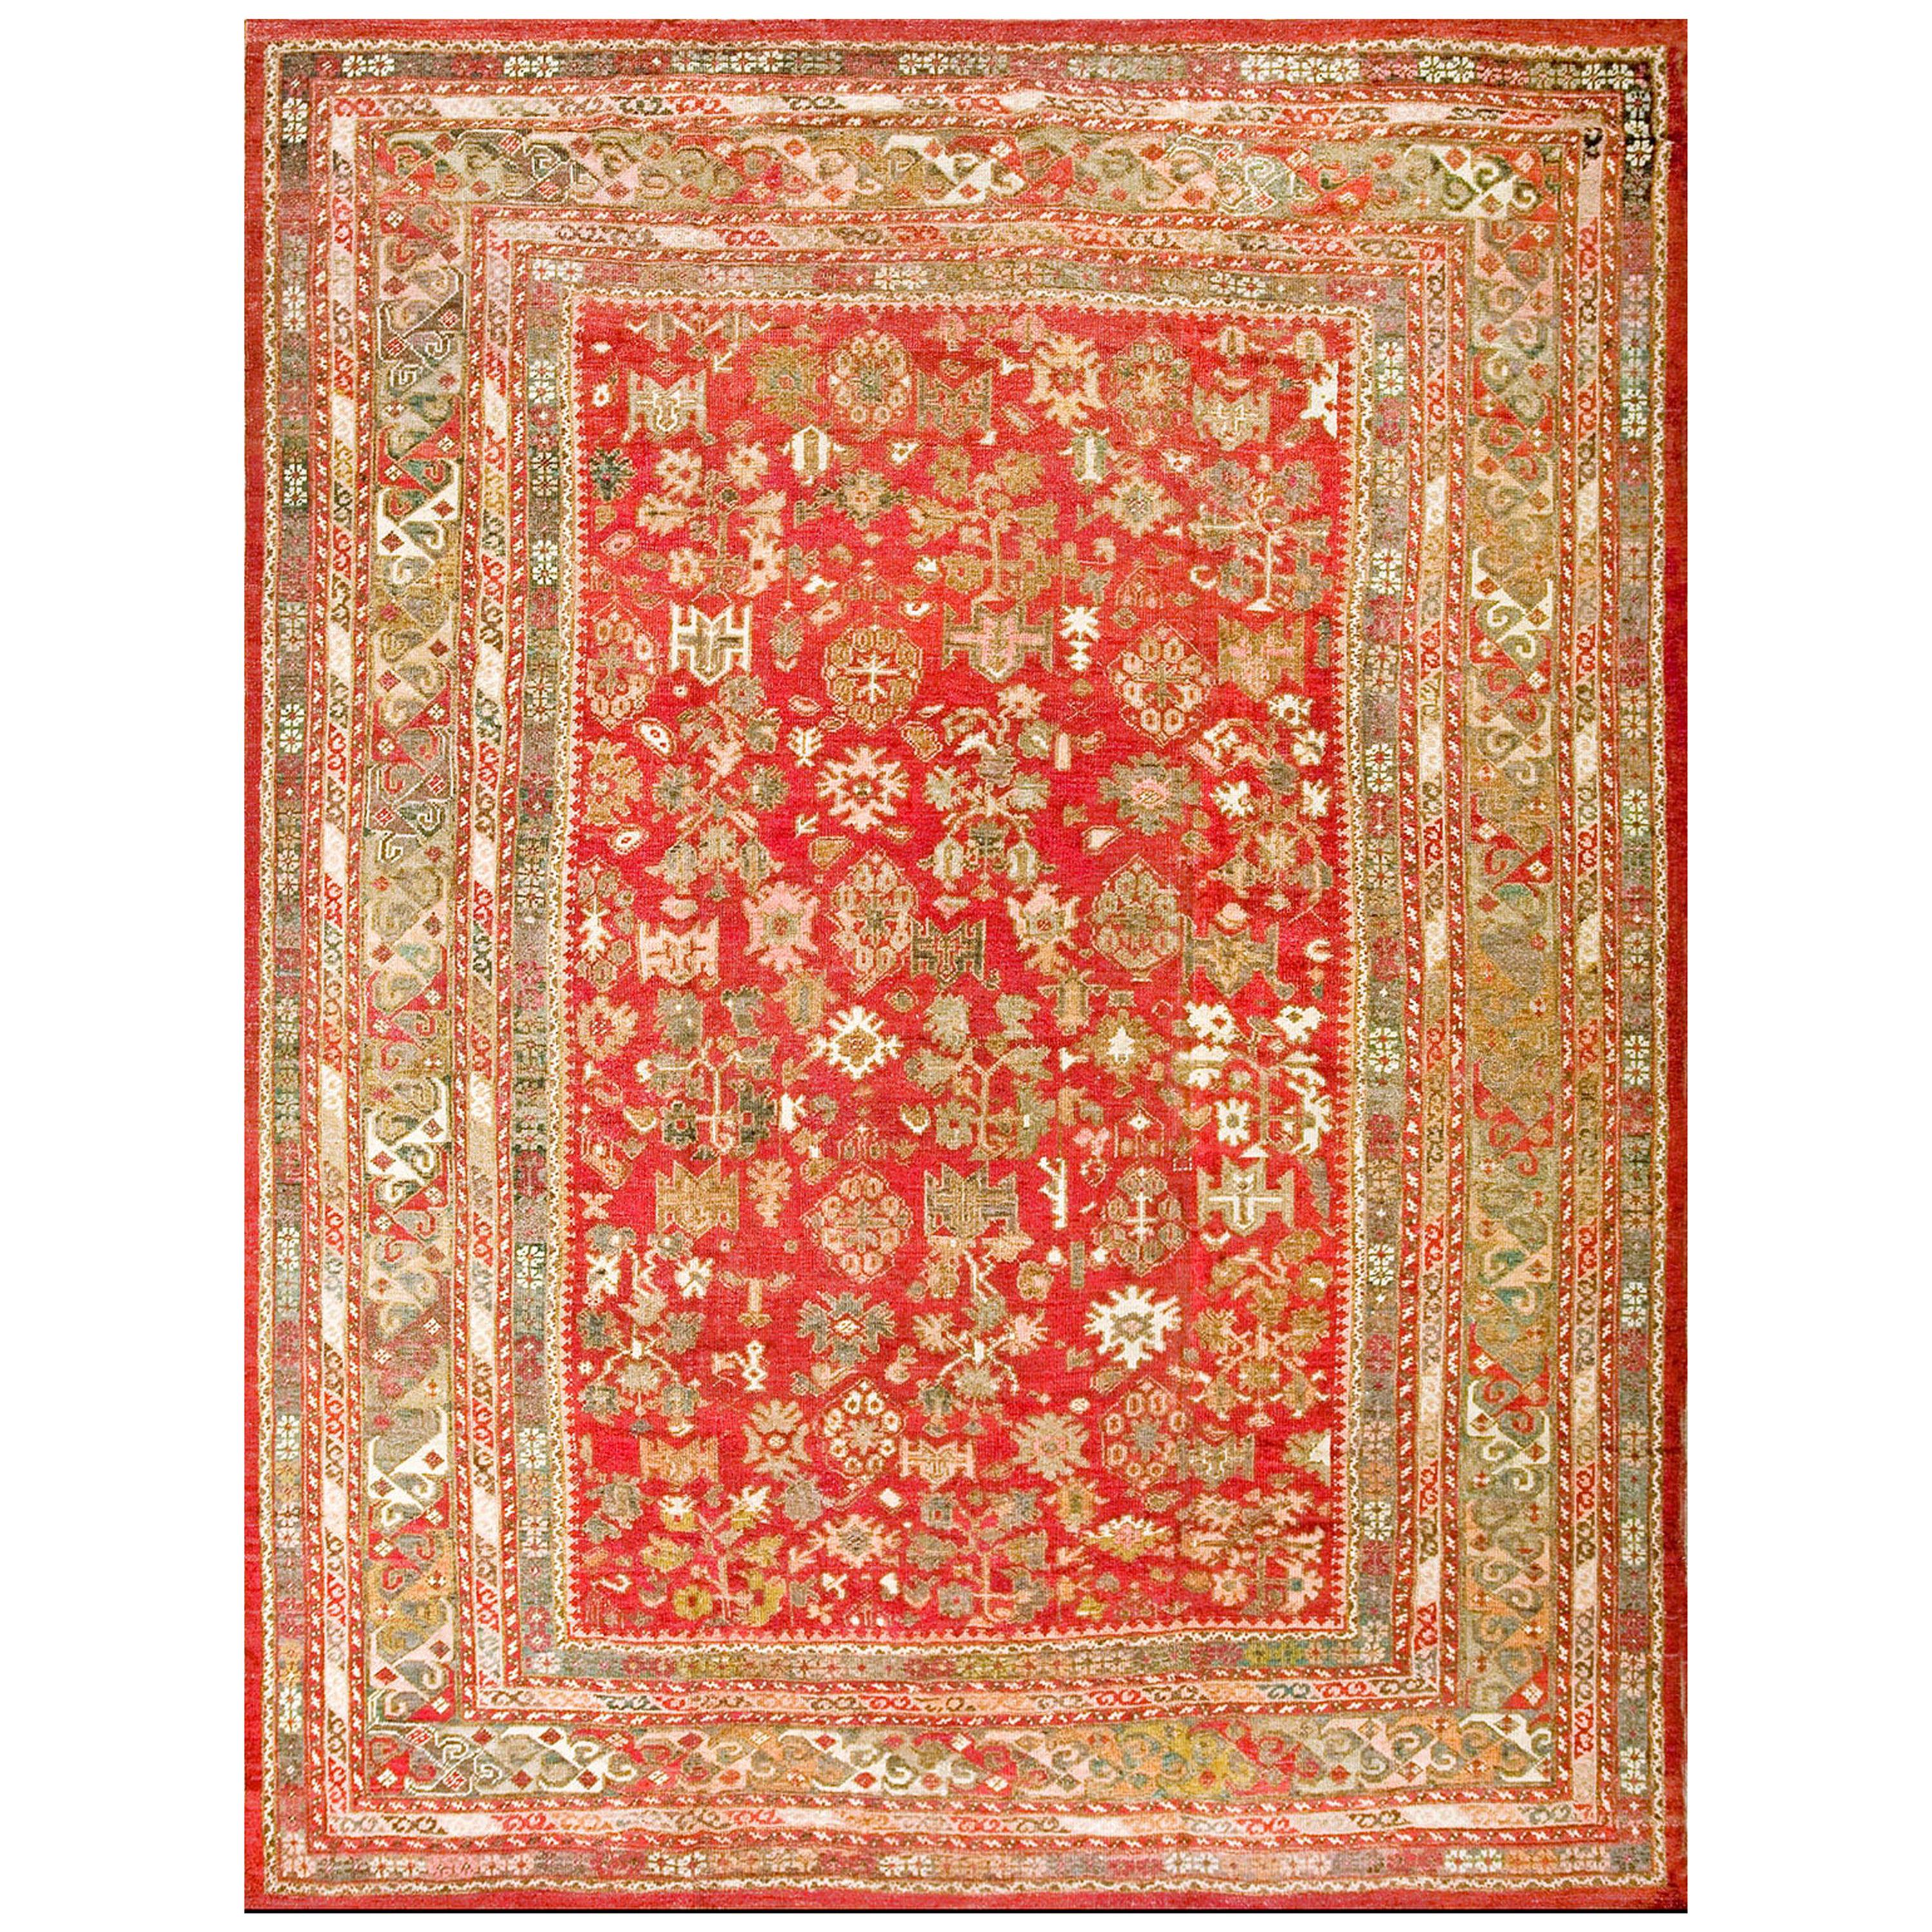 Türkischer Ghiordes Oushak-Teppich des 19. Jahrhunderts ( 9' x 11'8" - 275 x 355")